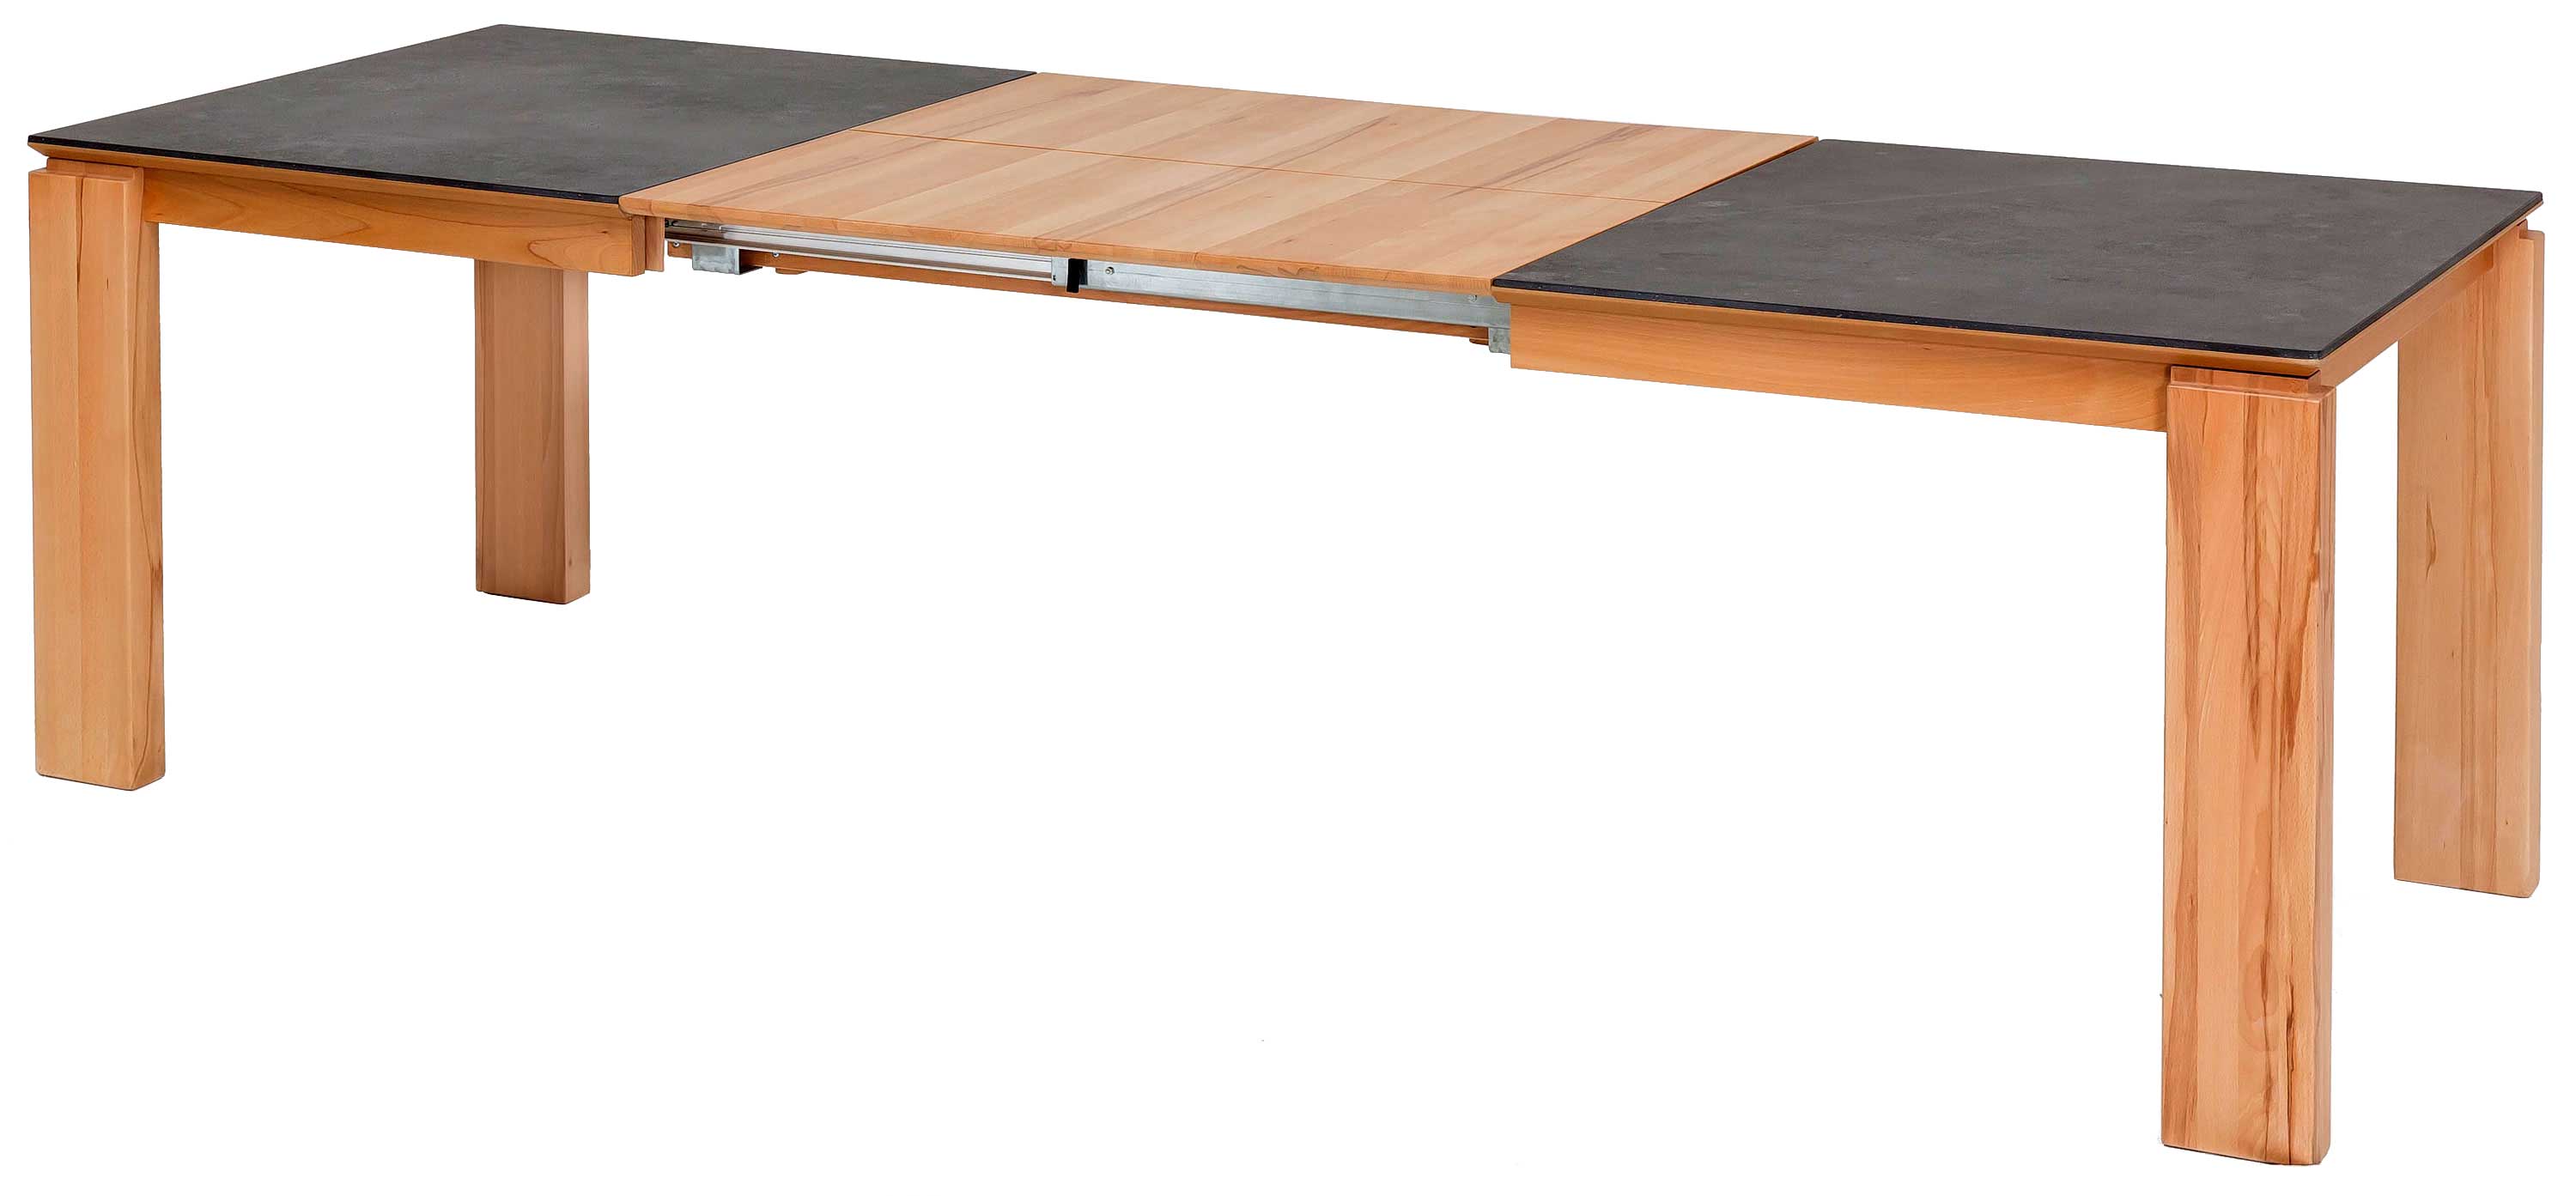 Standard Furniture Malaga Massivholztisch 160x90 cm ausziehbar mit Dektonplatte